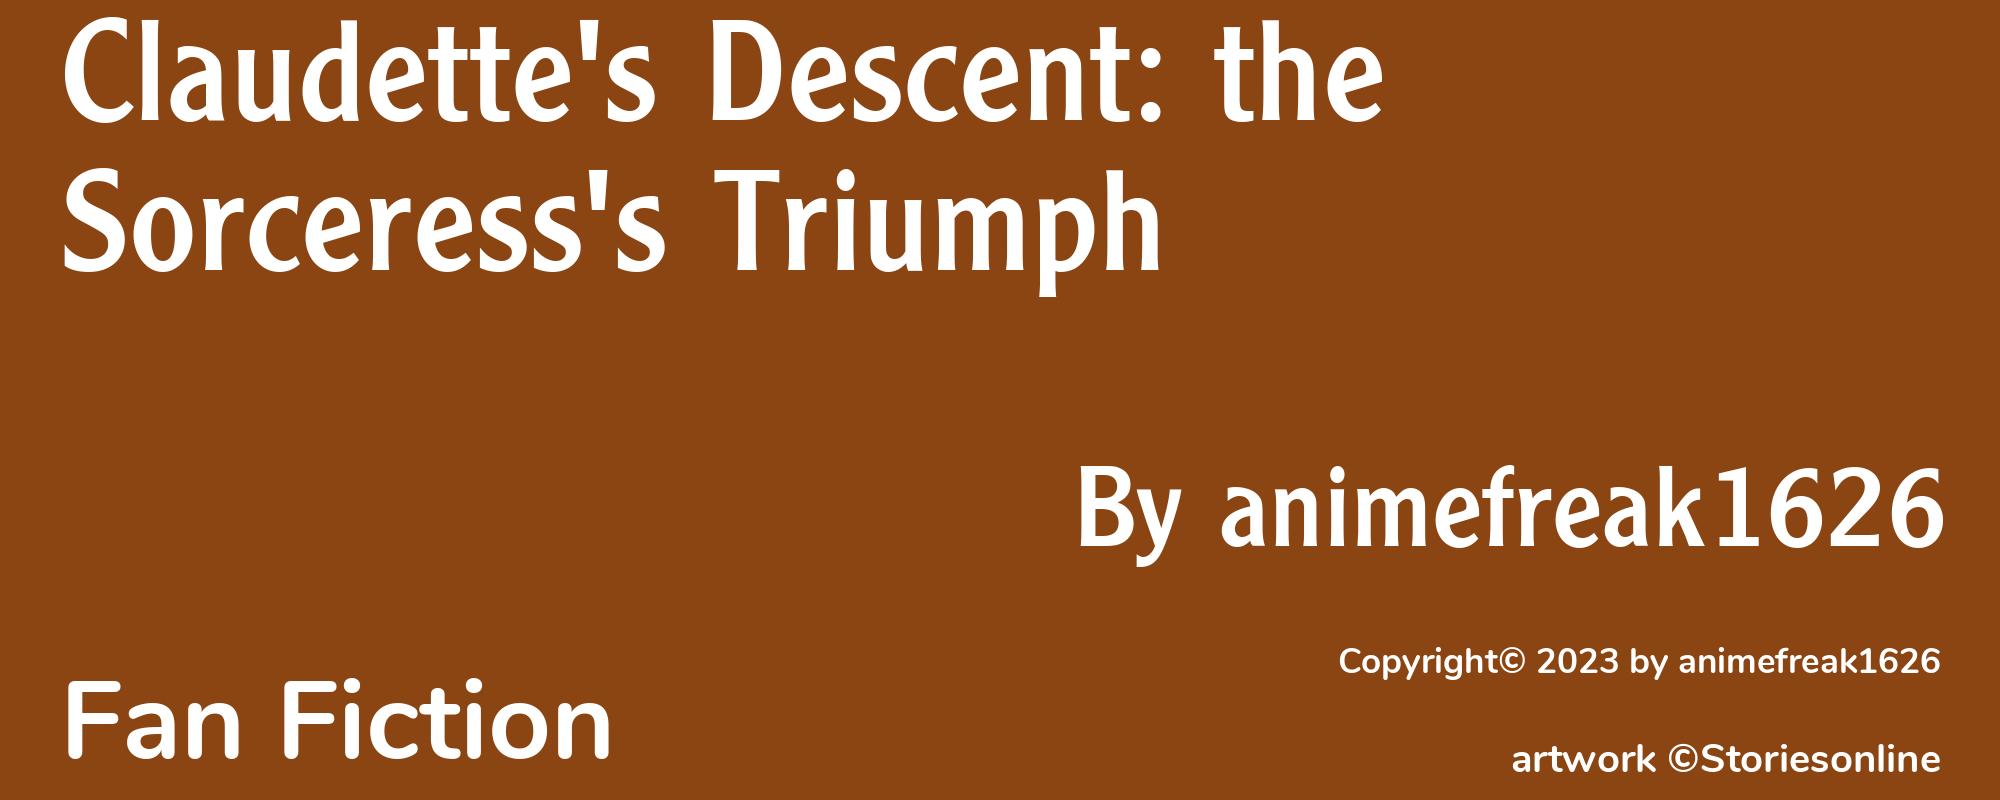 Claudette's Descent: the Sorceress's Triumph - Cover